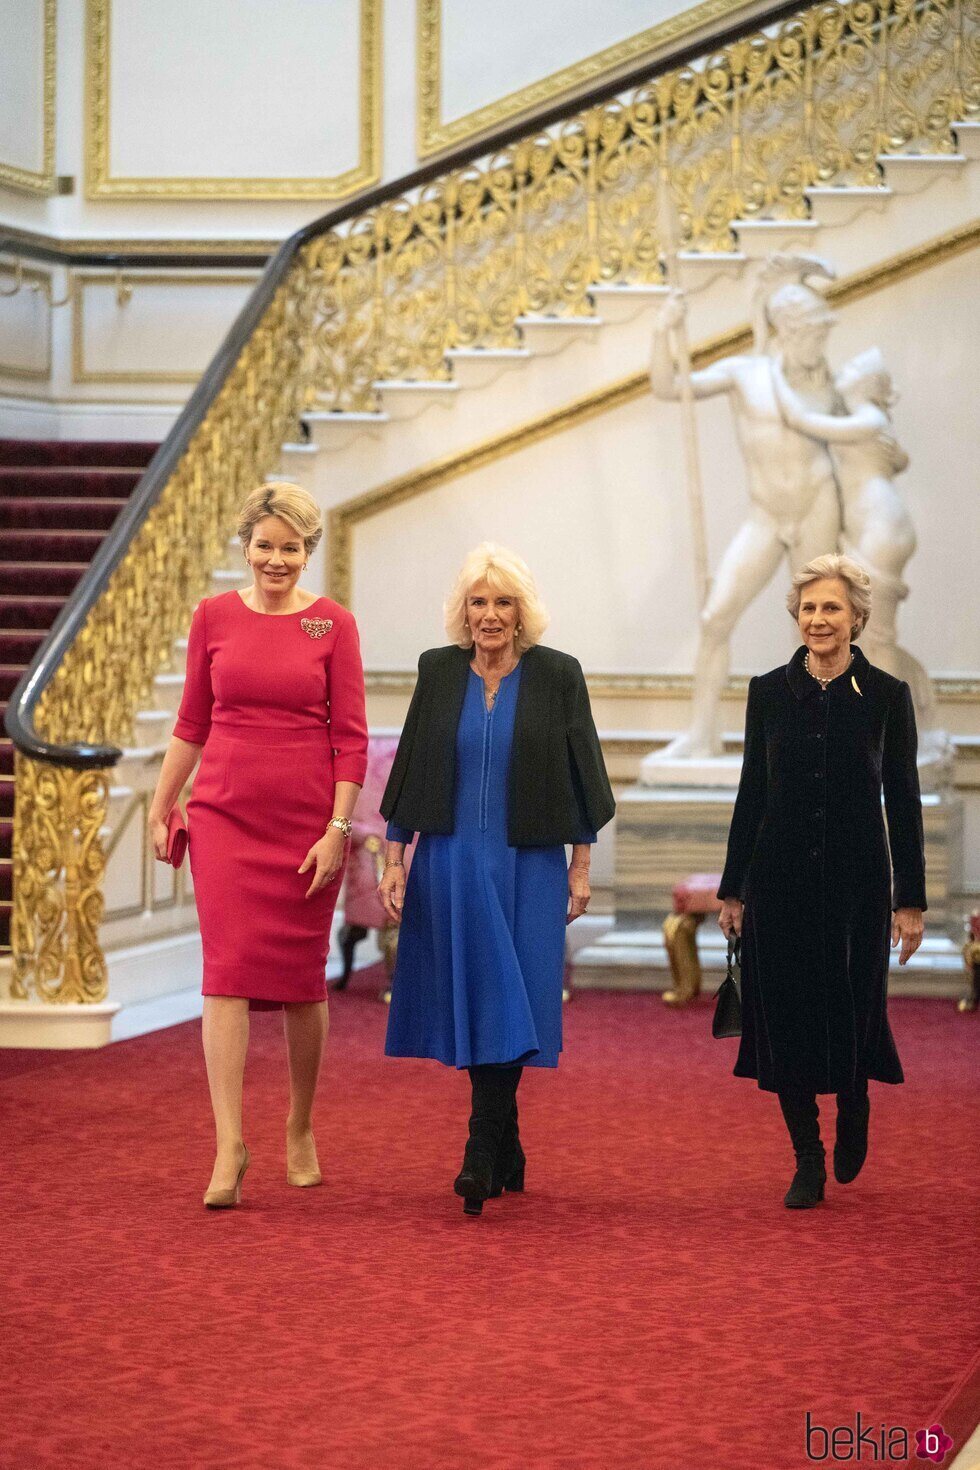 Matilde de Bélgica, la Reina Camilla y la Duquesa de Gloucester en una recepción por el Día Internacional de la Mujer en Buckingham